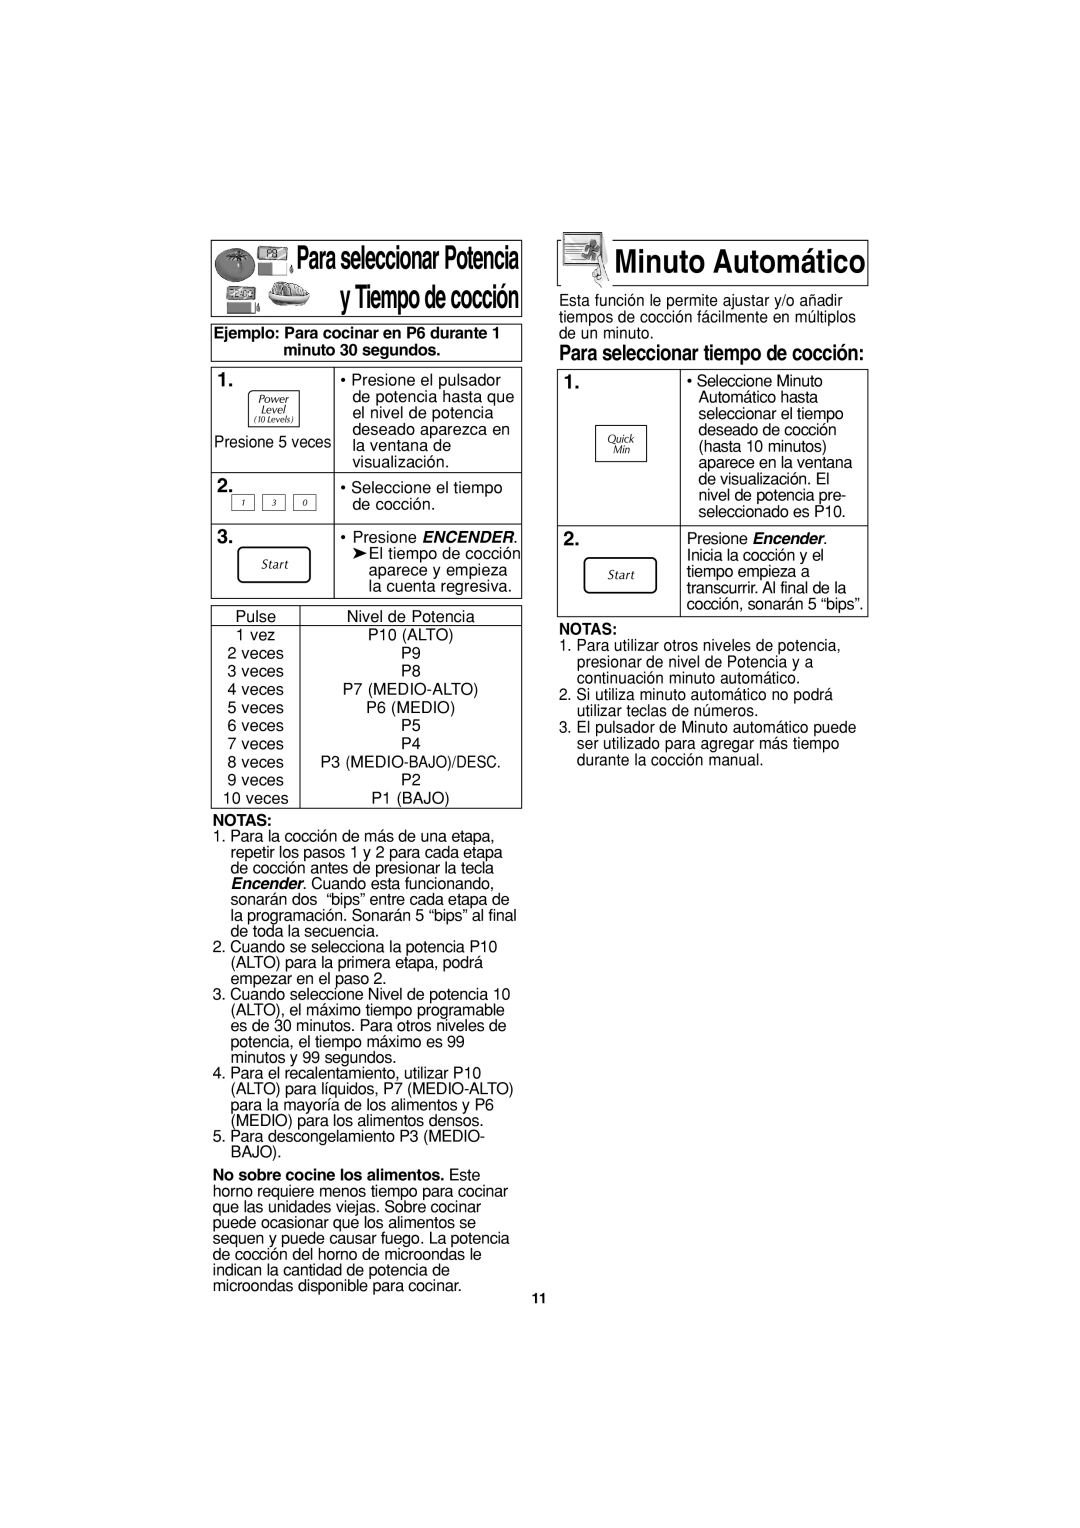 Panasonic NN-S423 important safety instructions Minuto Automático, Para seleccionar Potencia y Tiempo de cocción, Notas 